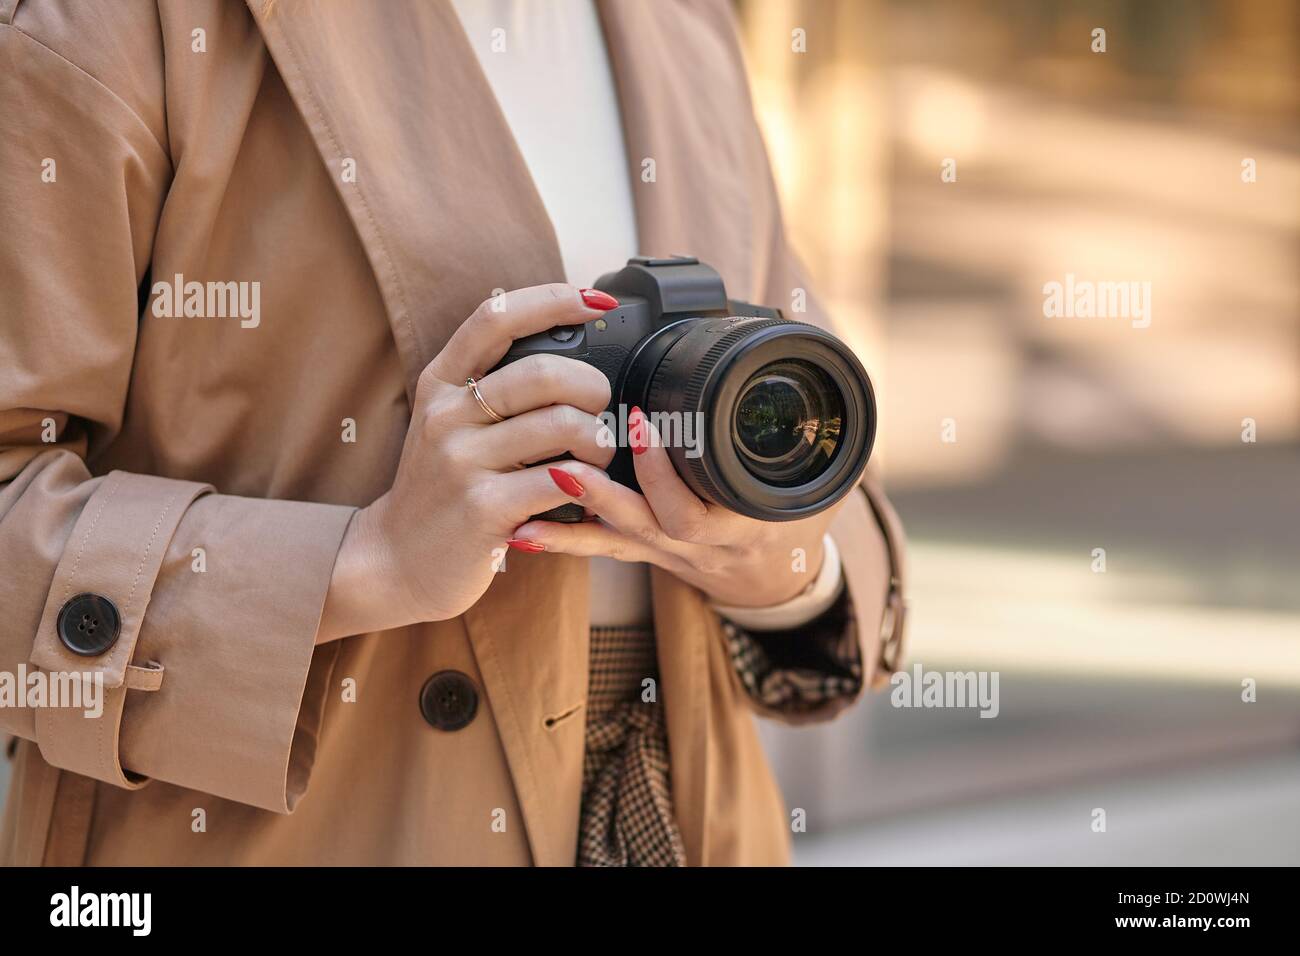 Femme en gros plan tenant un appareil photo professionnel, beige Banque D'Images